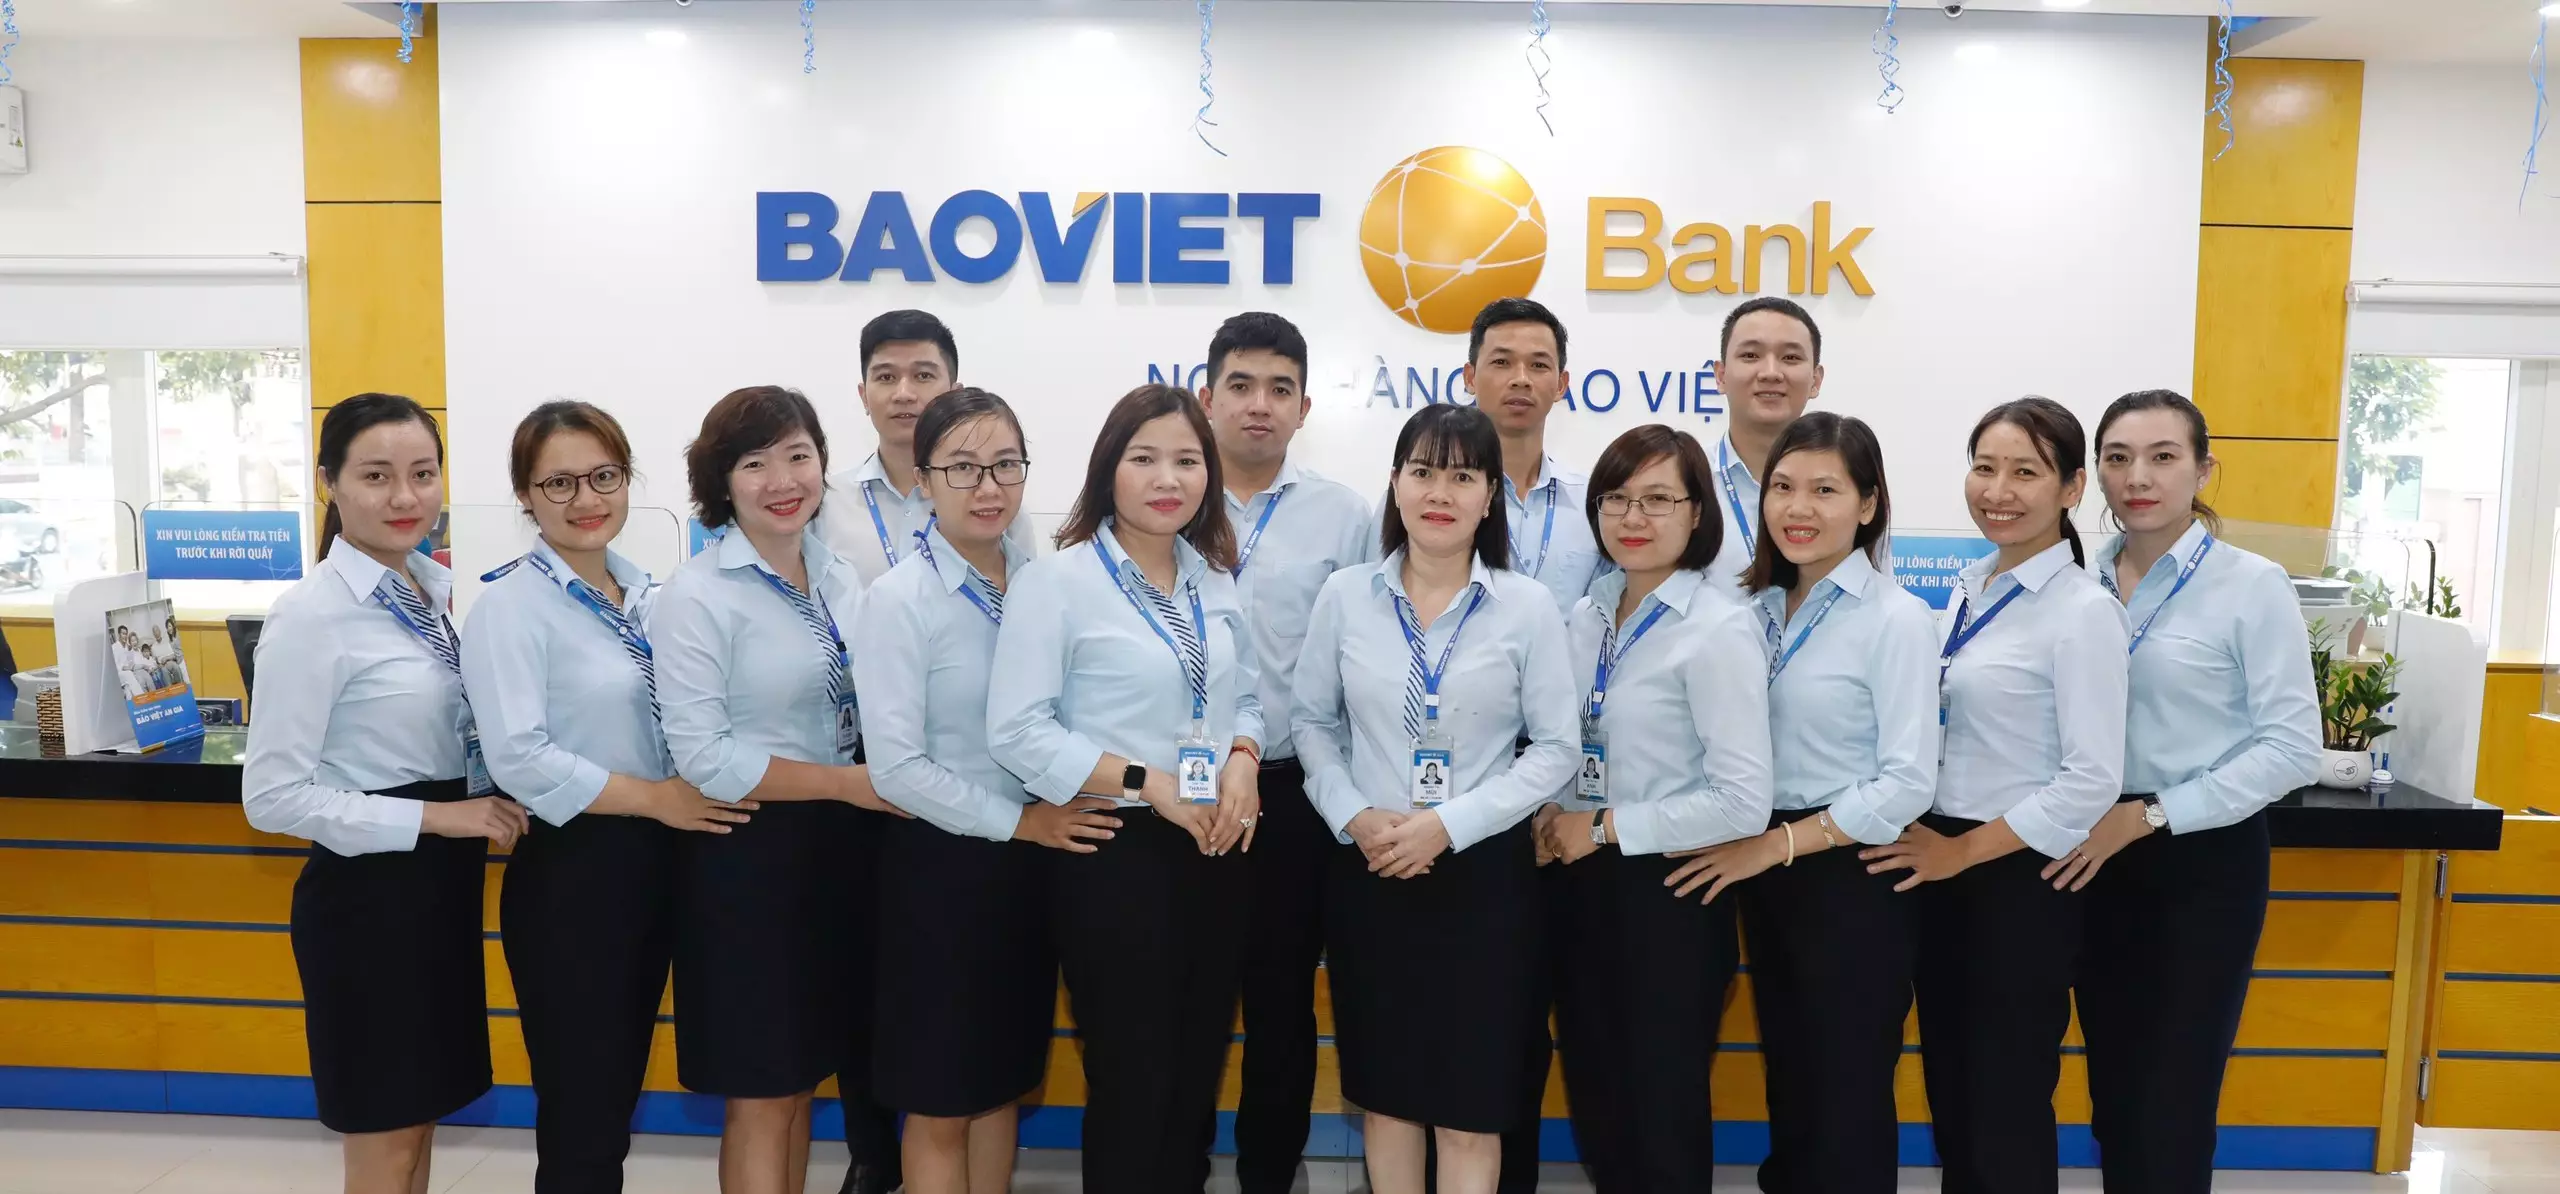 Đội ngũ nhân viên của ngân hàng Bảo Việt